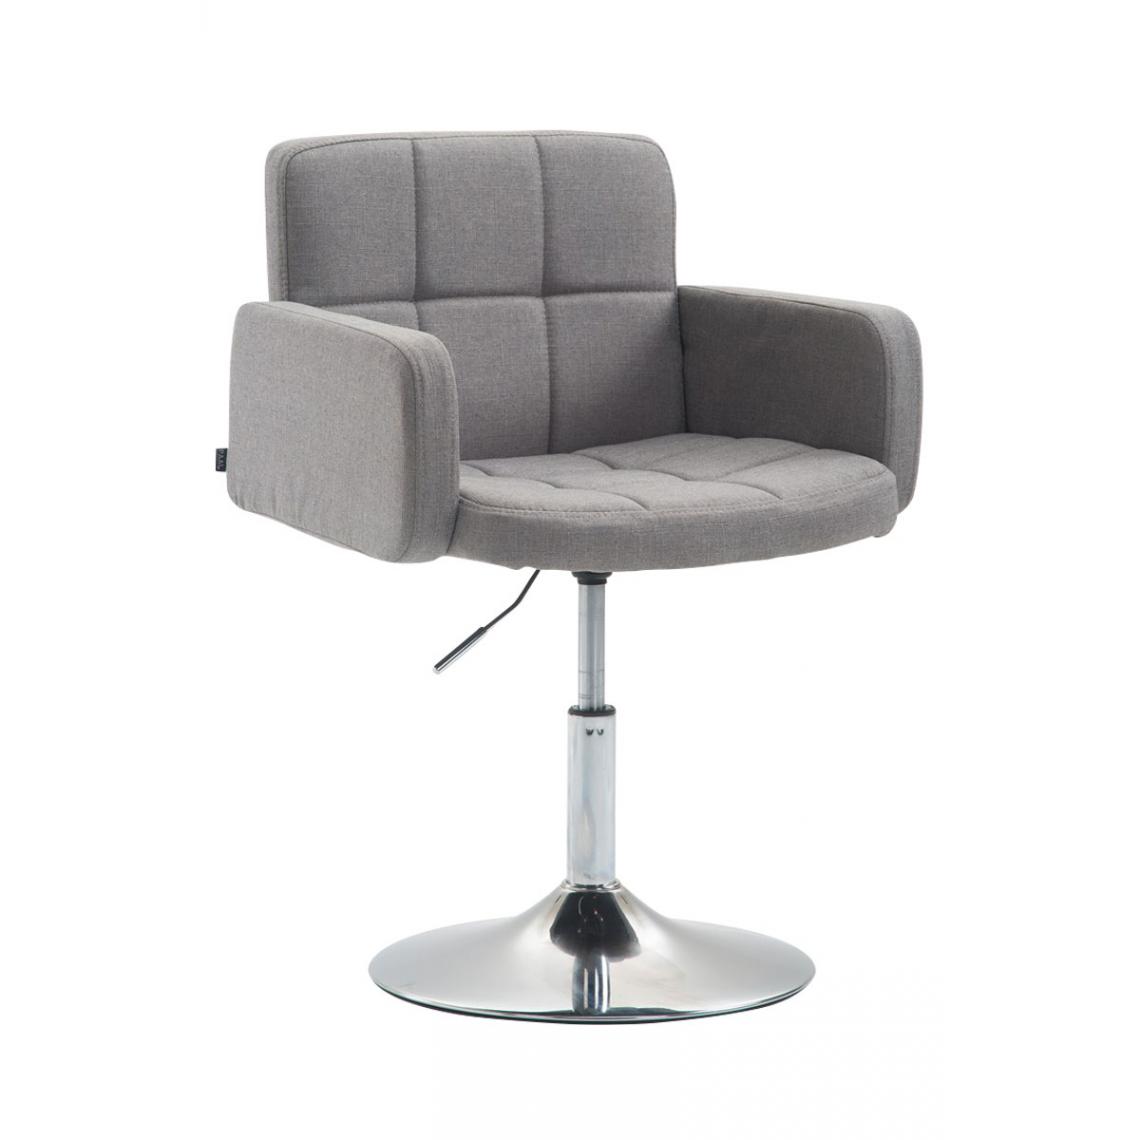 Icaverne - Stylé Tissu pour chaise longue serie Nouakchott Angeles couleur gris - Transats, chaises longues